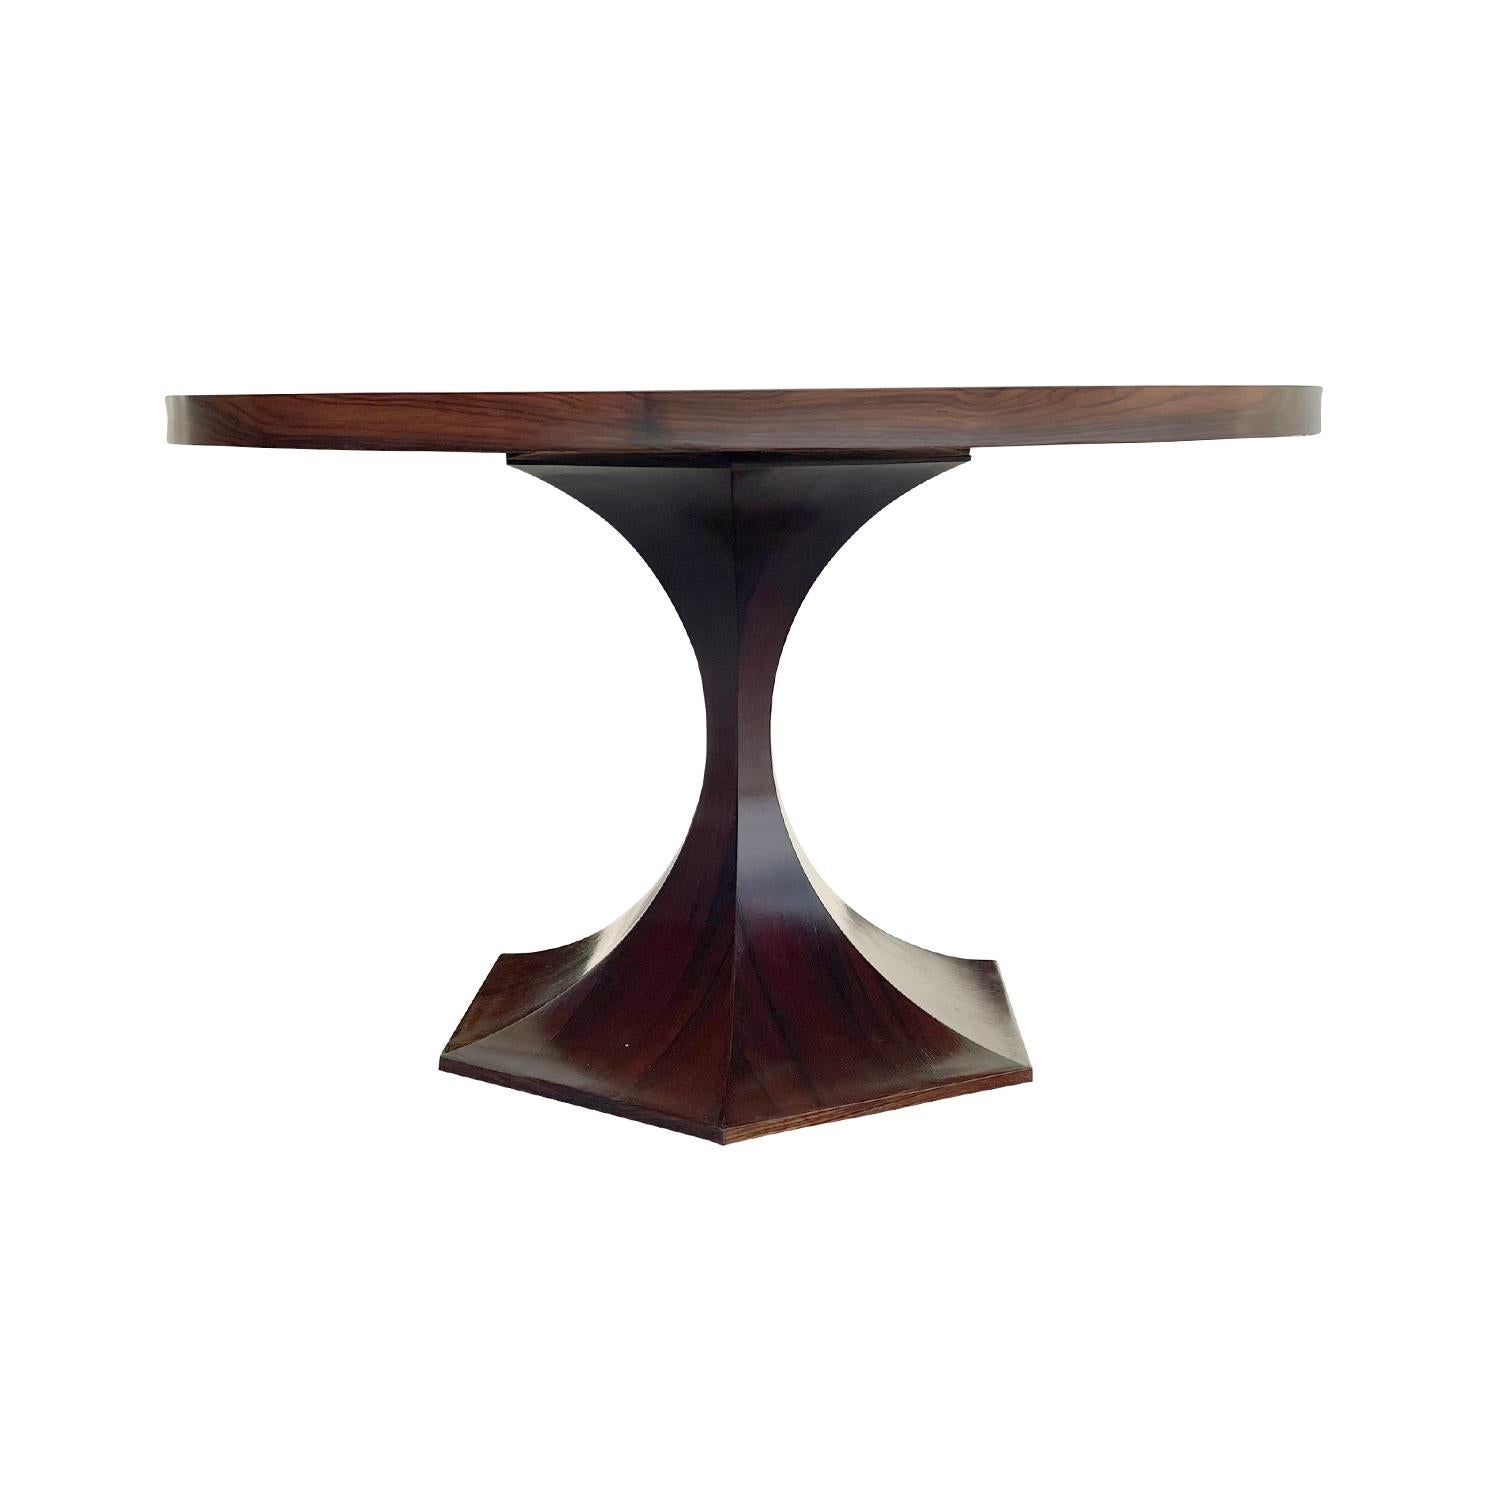 Ein runder italienischer Esszimmertisch aus der Jahrhundertmitte, handgefertigt aus poliertem Palisander, in gutem Zustand. Der kleine Mitteltisch besteht aus einer runden Tischplatte, die von einem skulpturalen Holzsockel getragen wird, der durch